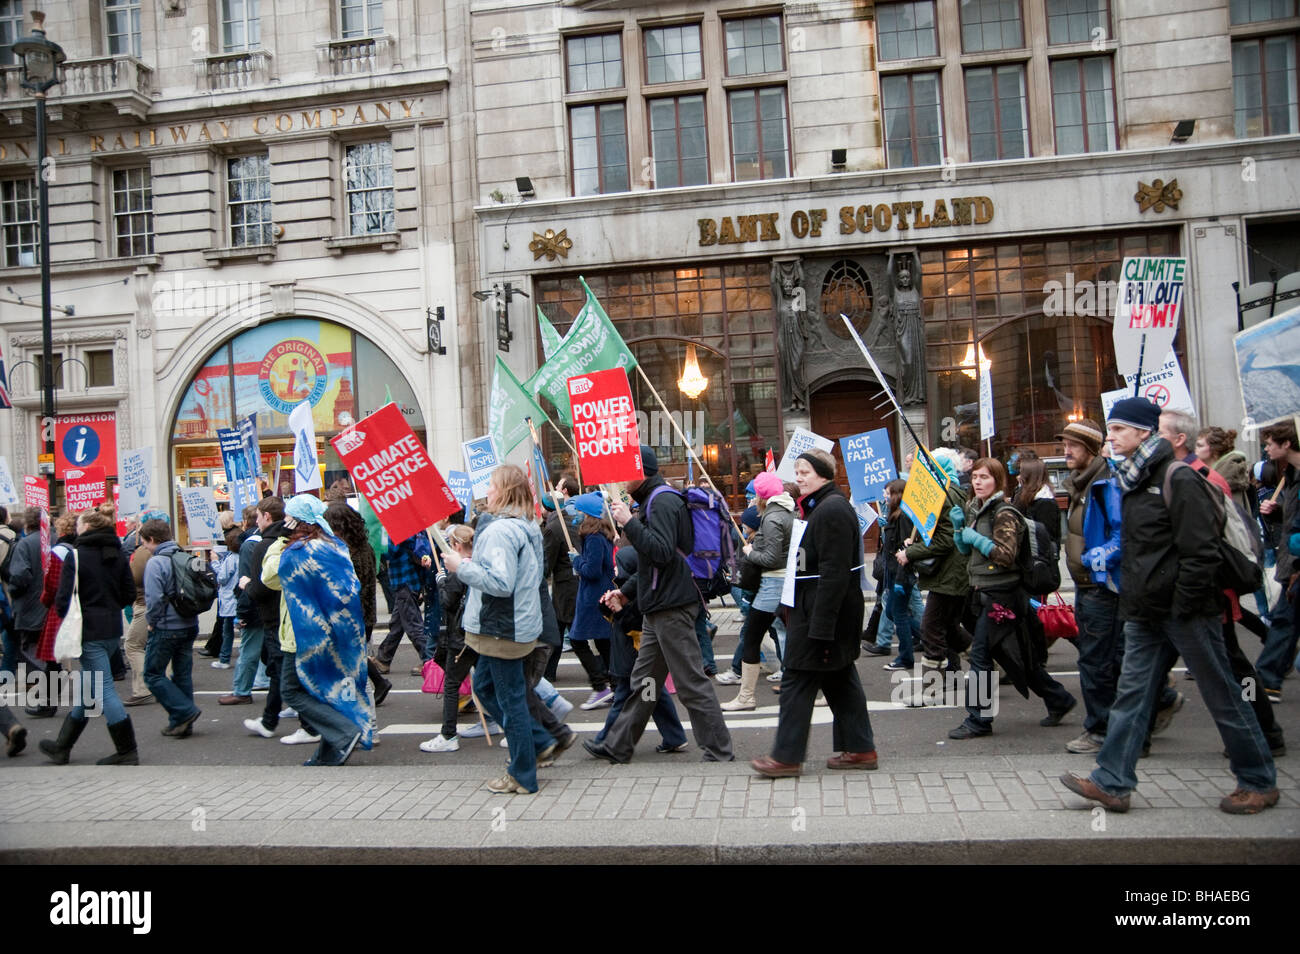 "L'Onda' la più grande manifestazione mai realizzata sul Cambiamento Climatico,Londra 05/12/09 manifestanti marciano passato la Bank of Scotland Foto Stock